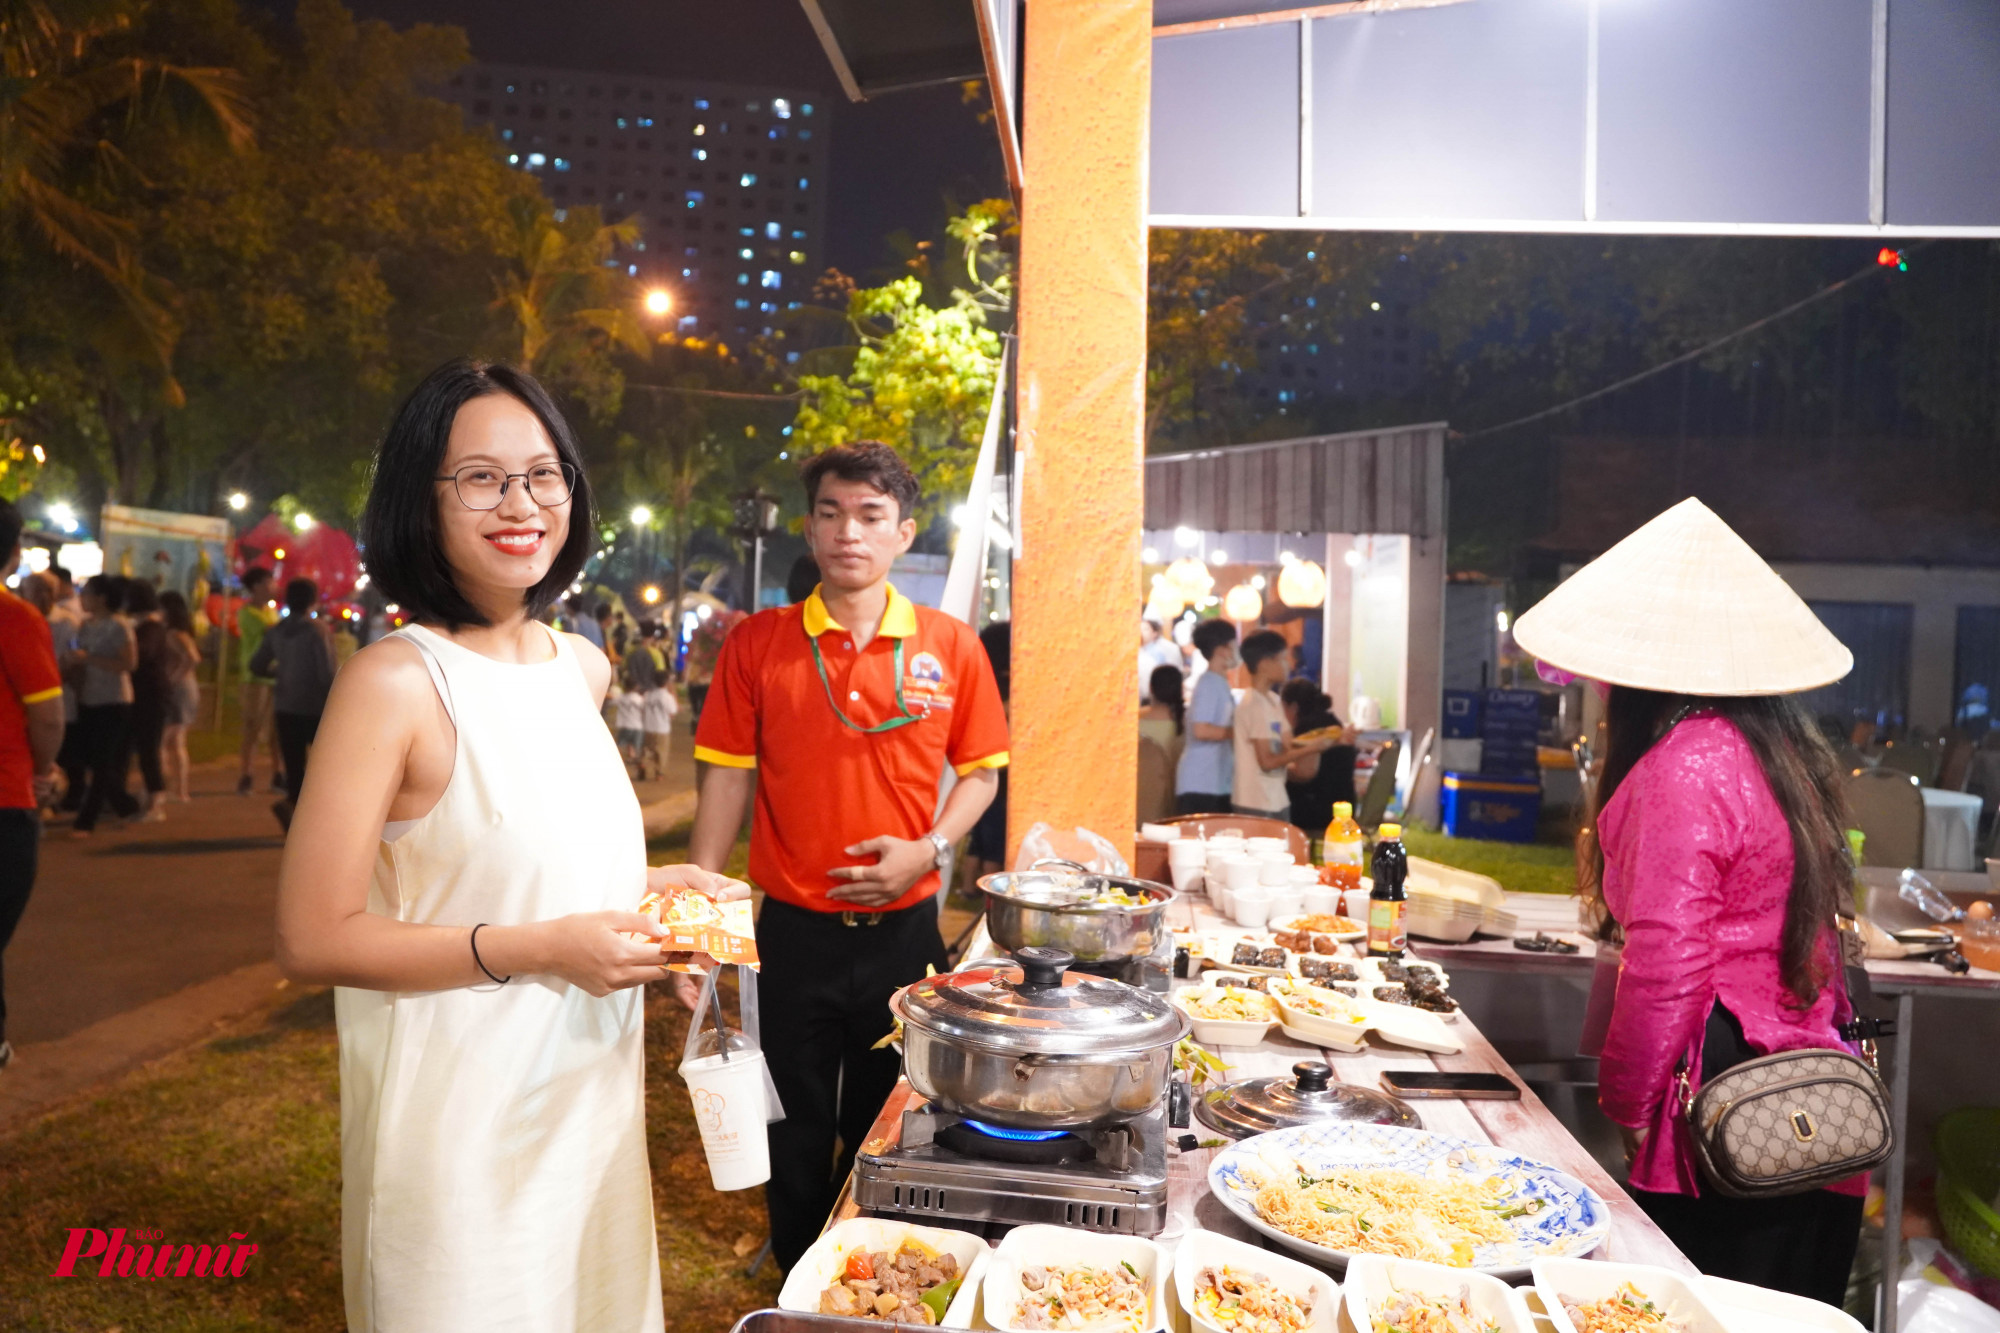 Lần đầu tham gia lễ hội ẩm thực này, chị Nguyễn Thị Mến cho biết, chị rất vui và hào hứng khi phát hiện rất nhiều món mới lạ mà trước giờ mình chưa hình thấy cũng như chưa có dịp trải nghiệm